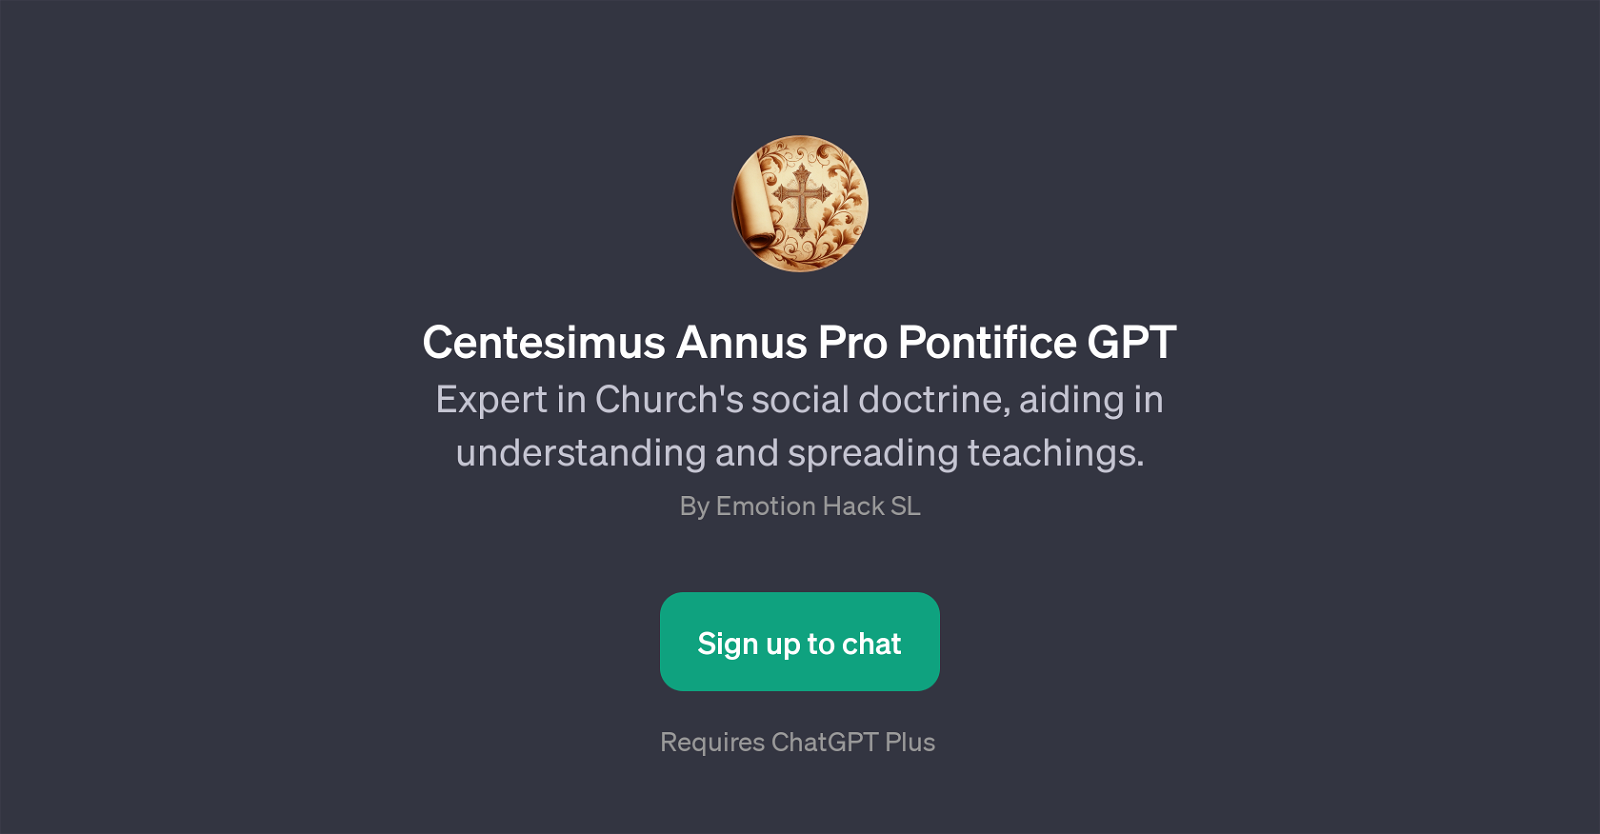 Centesimus Annus Pro Pontifice GPT website